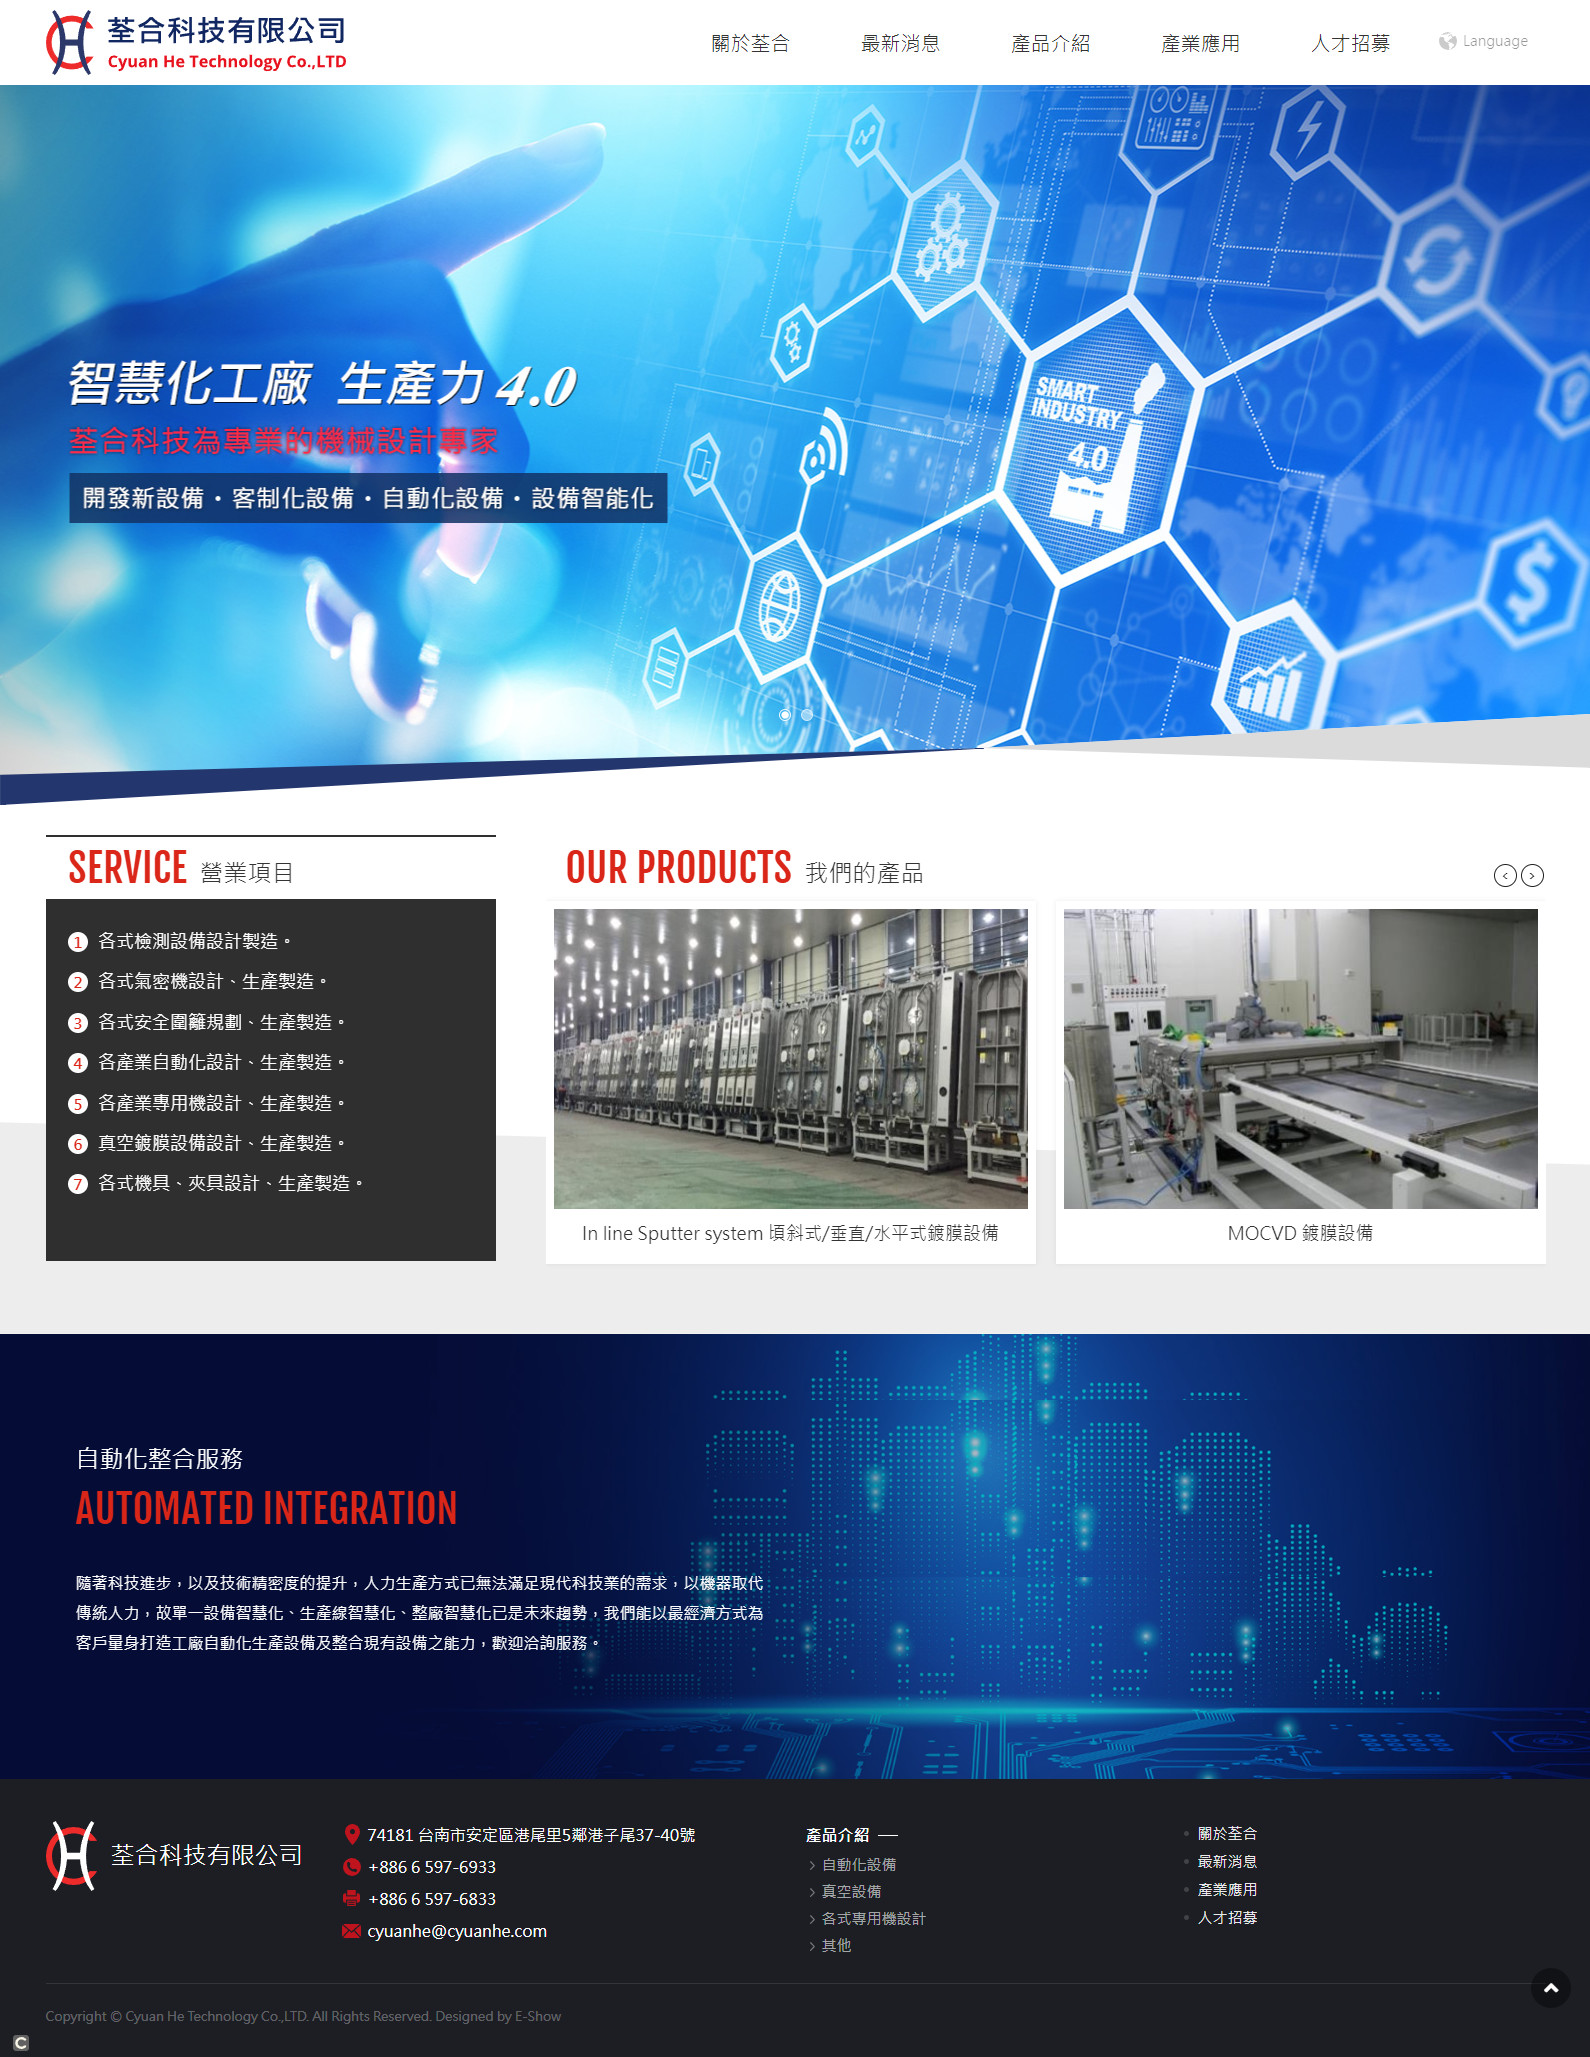 荃合科技 RWD響應式企業網站設計
網站設計